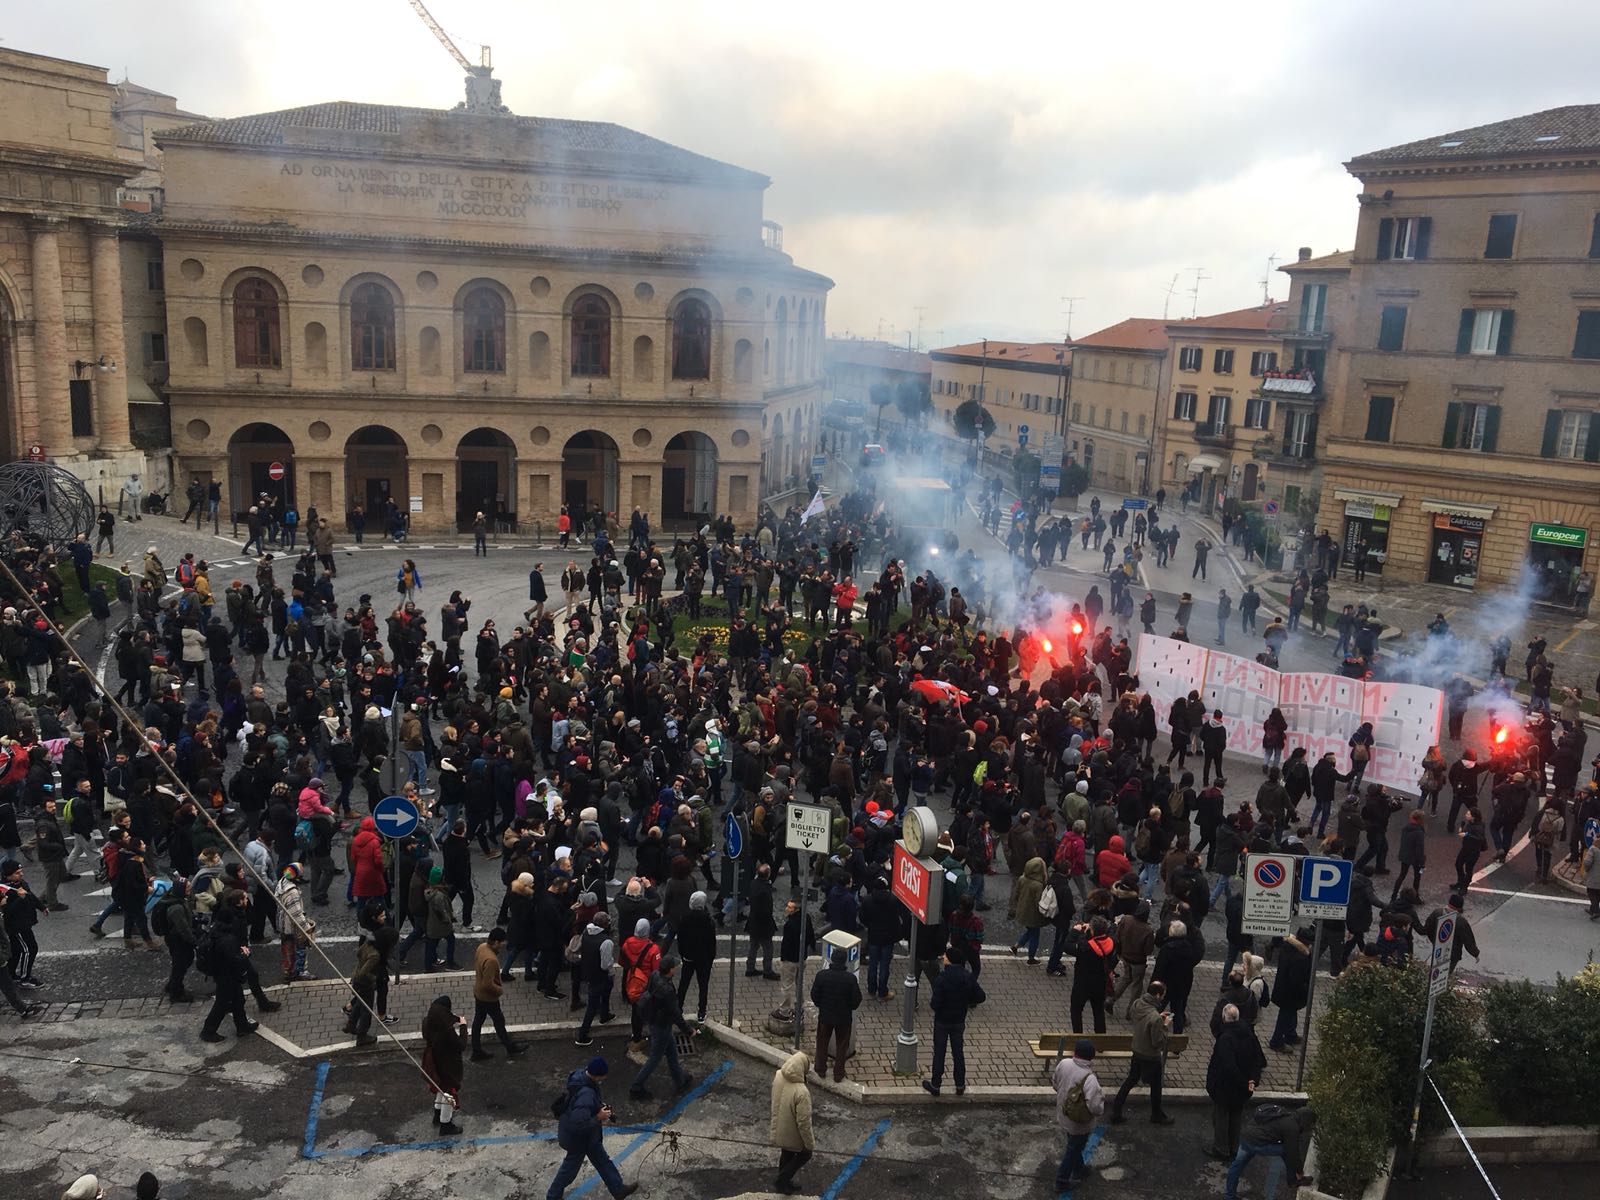 FOTO. In corso la manifestazione contro il fascismo a Macerata